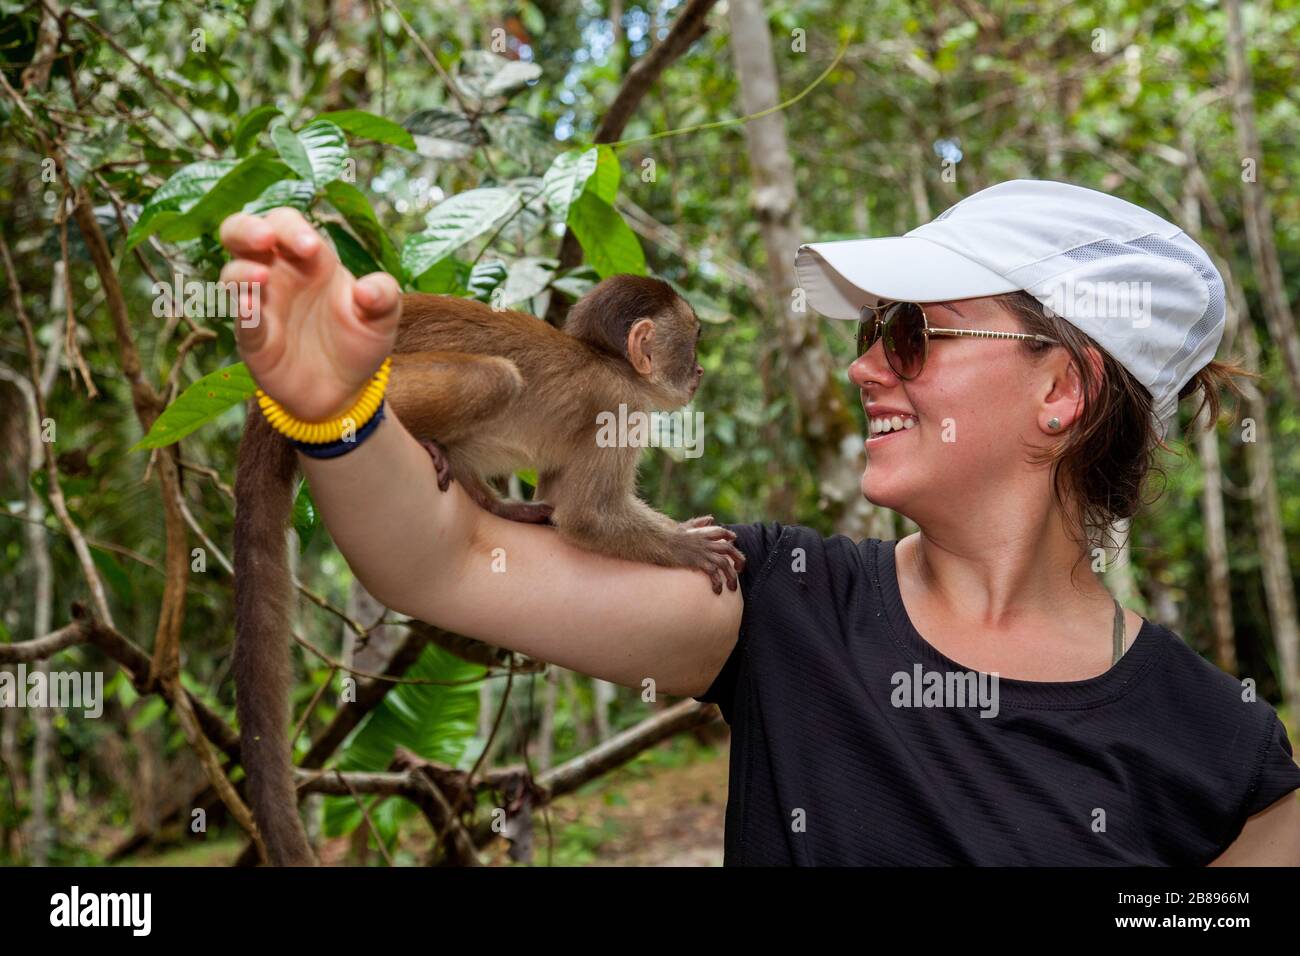 Mädchen, die einen Affen halten. Maikuchiga-Stiftung, Affenheiligtum in  Loreto Mocagua im Amazonas-Regenwald, Leticia Amazon, Kolumbien. Südamerika  Stockfotografie - Alamy